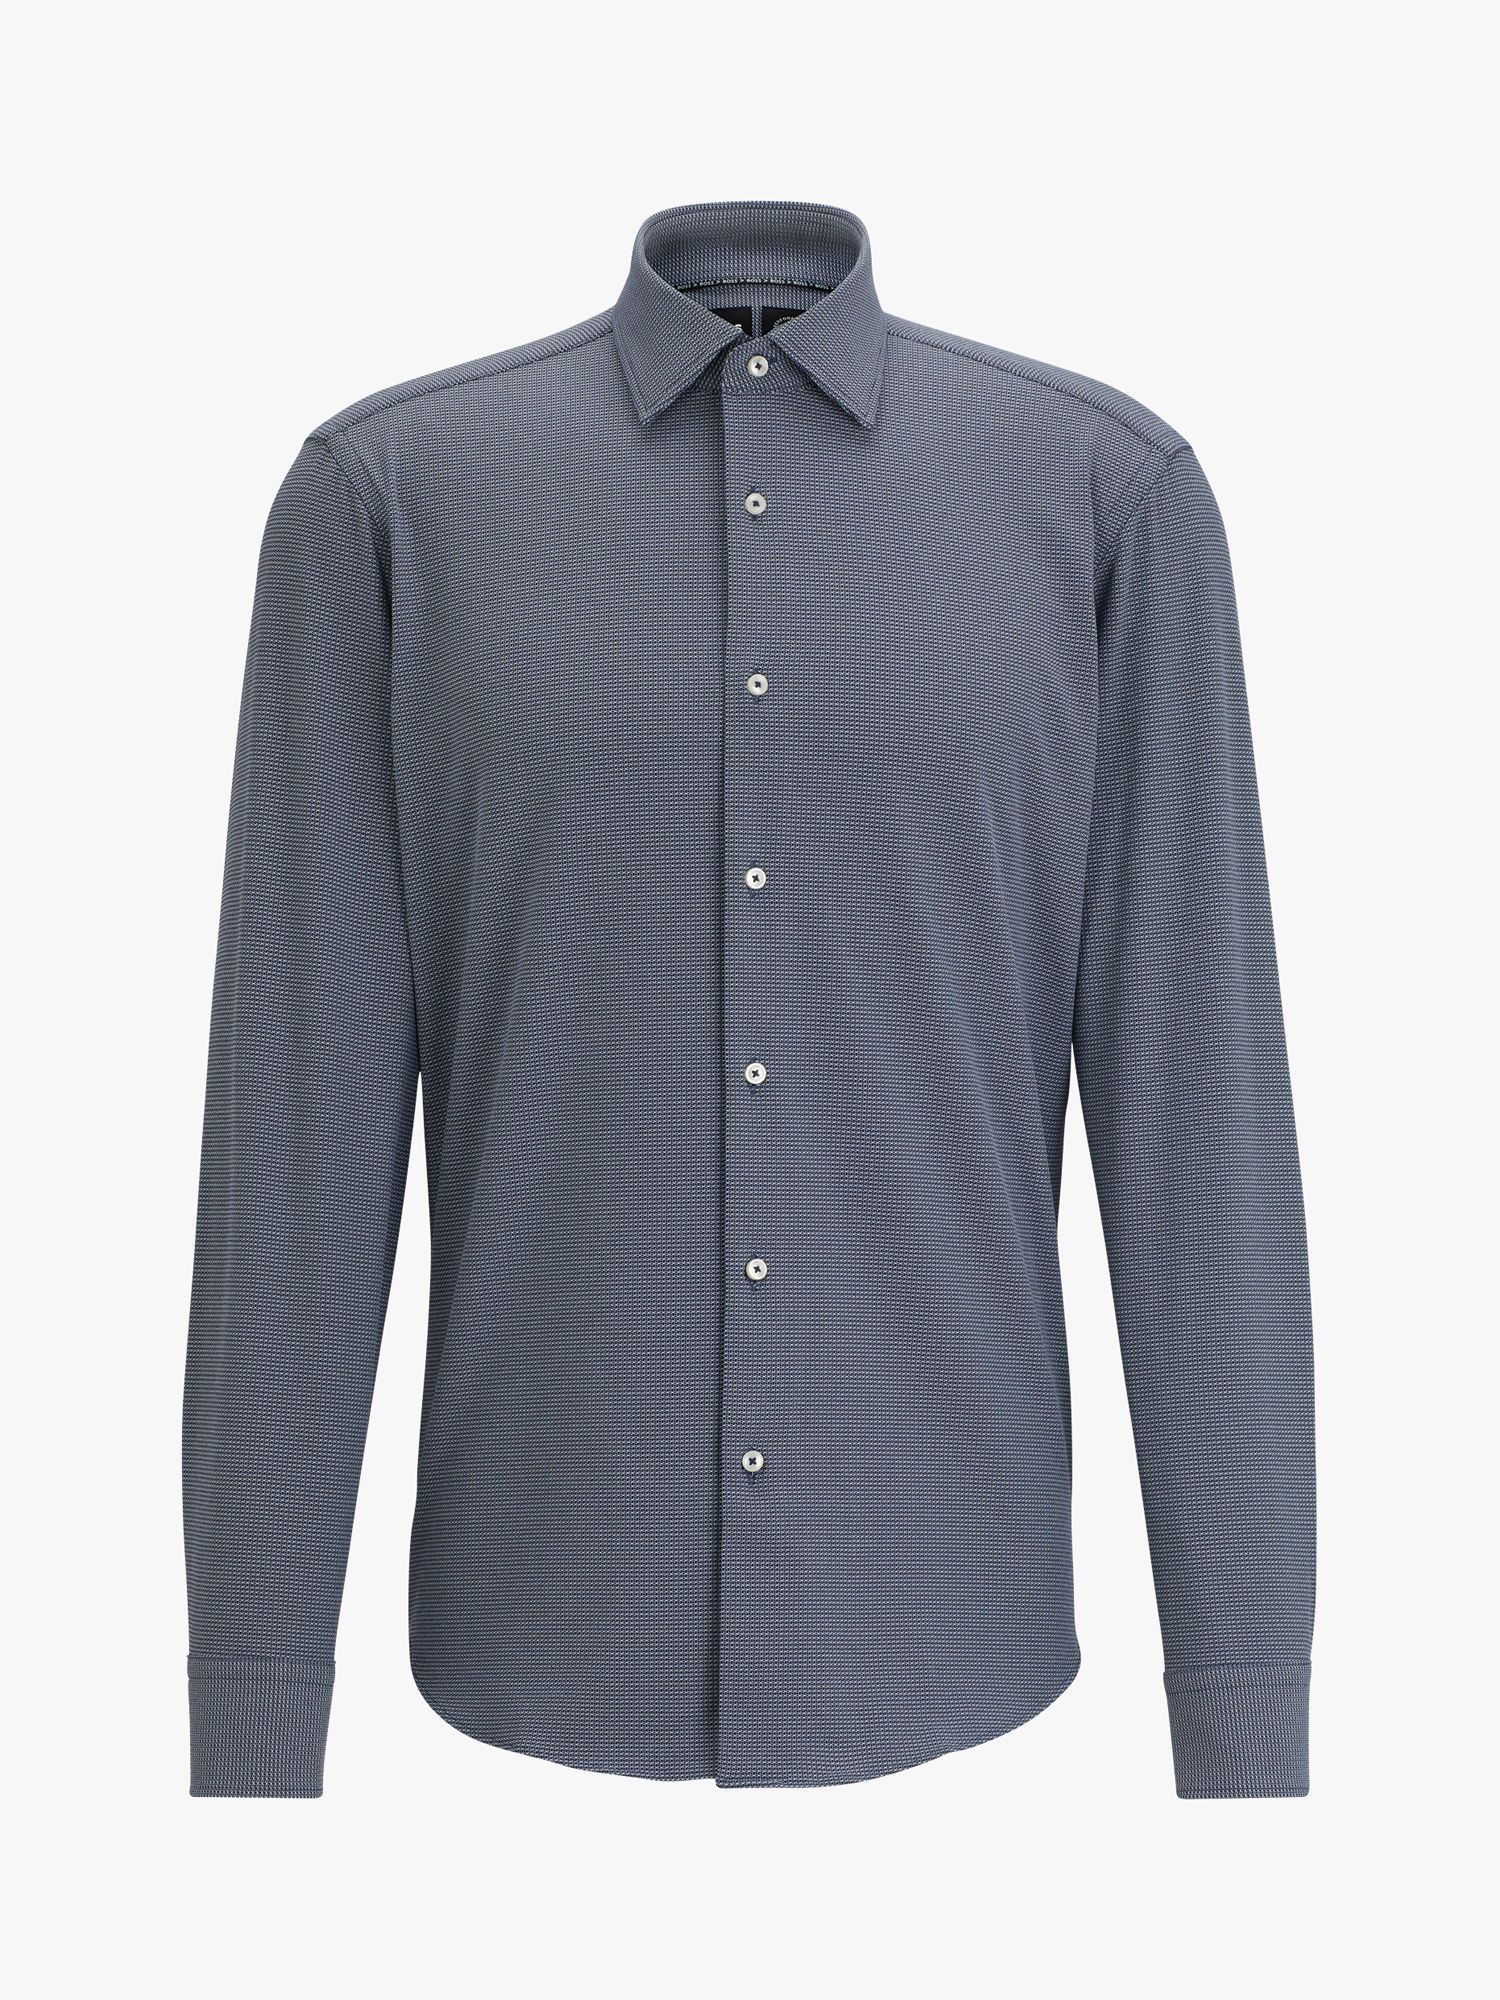 HUGO BOSS Joe Kent Regular Fit Shirt, Dark Blue at John Lewis & Partners